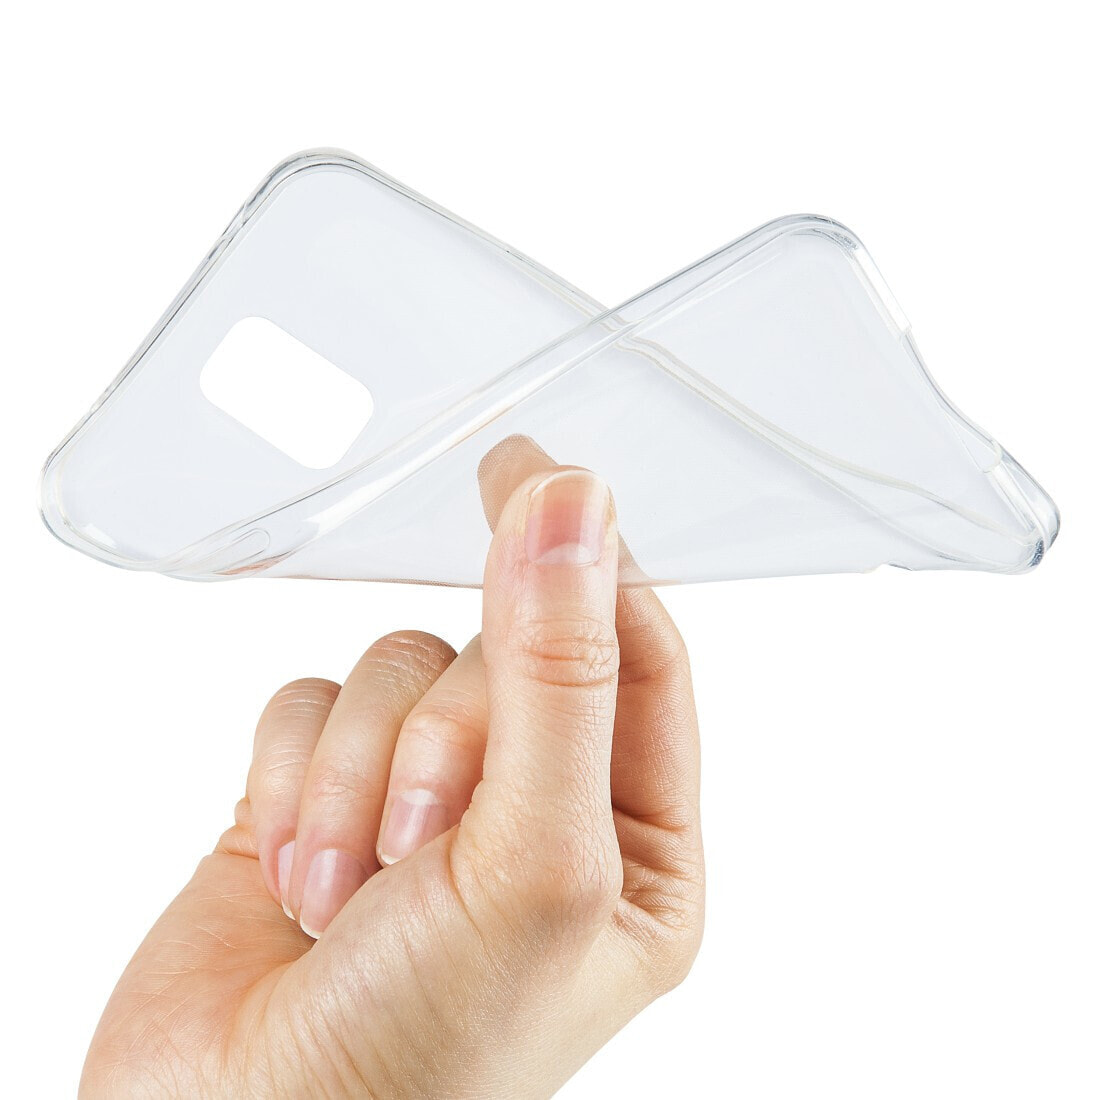 Hama Crystal Clear чехол для мобильного телефона 17 cm (6.7